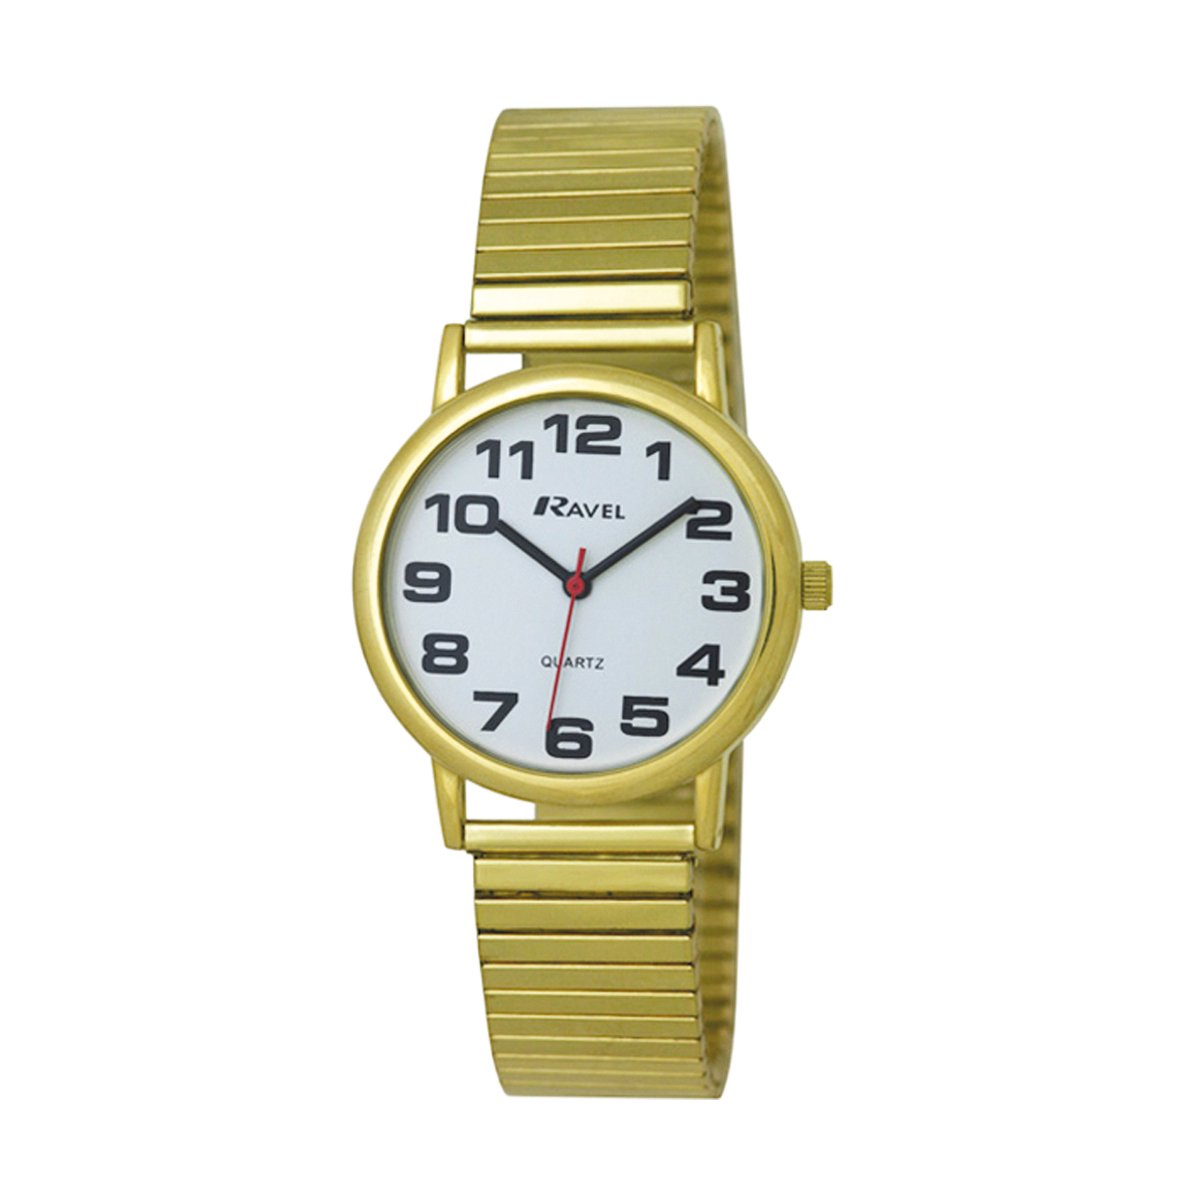 Ravel - heren gemakkelijk te lezen roestvrijstalen expander armband horloge met grote getallen (36mm horlogekast) - Analoge Kwarts - R0208.01.1S - goudkleurig / witte wijzerplaat